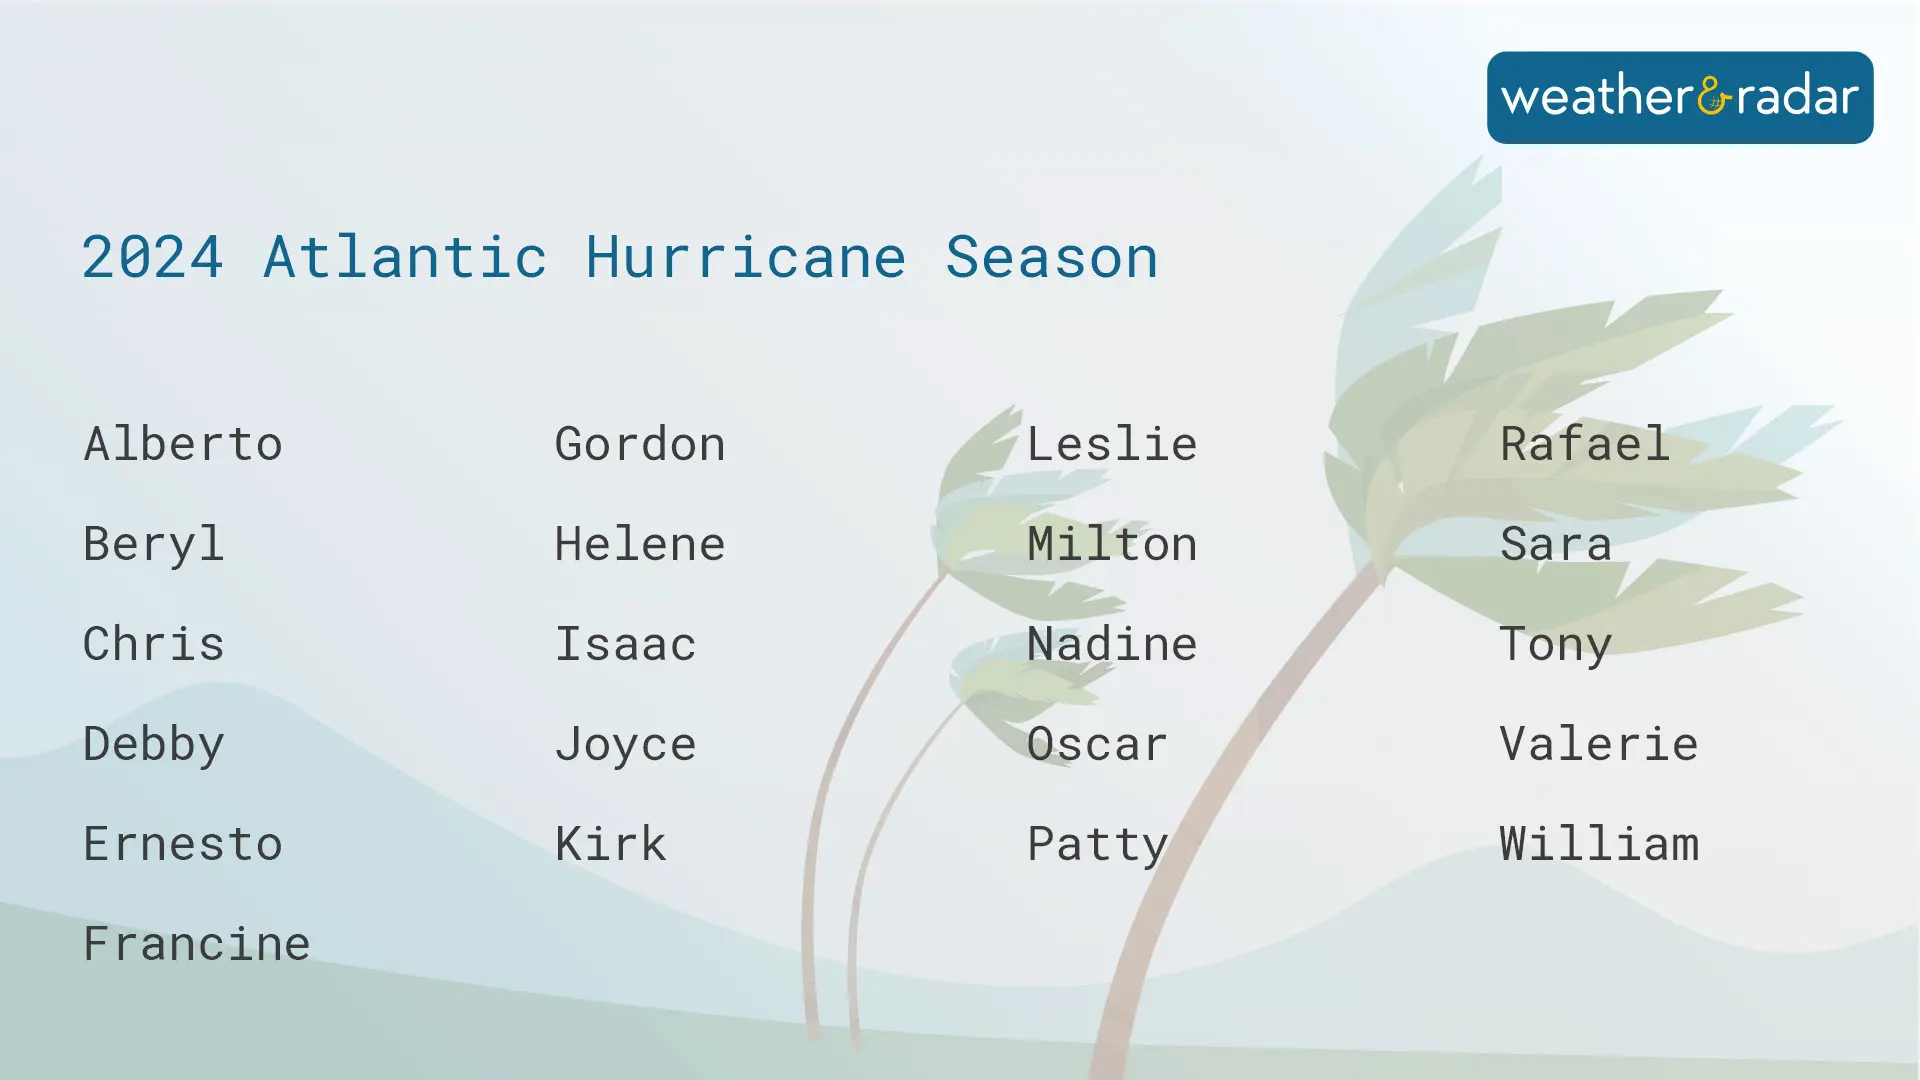 2024 Atlantic Hurricane Season names